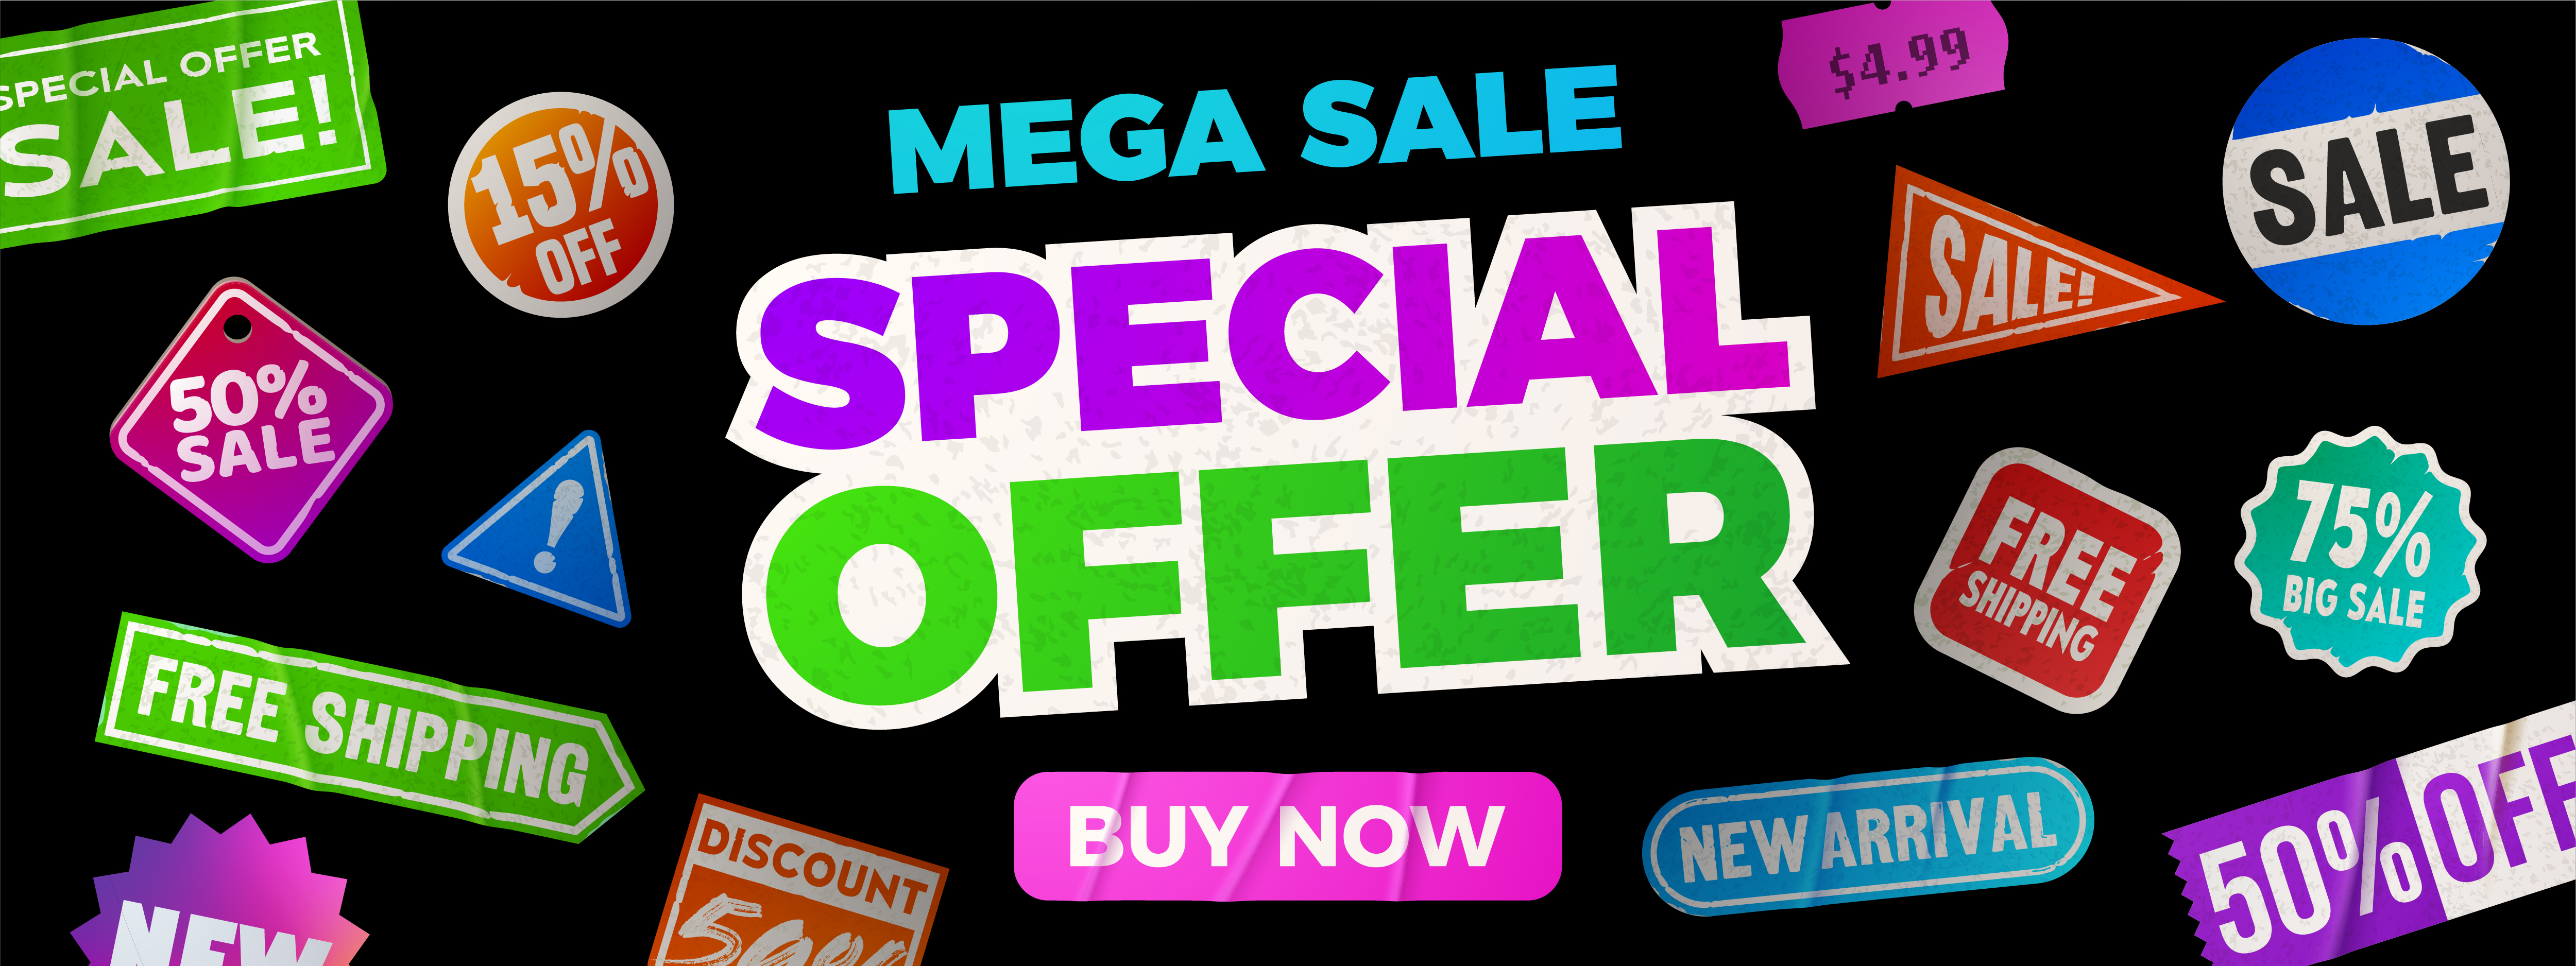 Mega-Sale-Special-Offer-Buy-Now